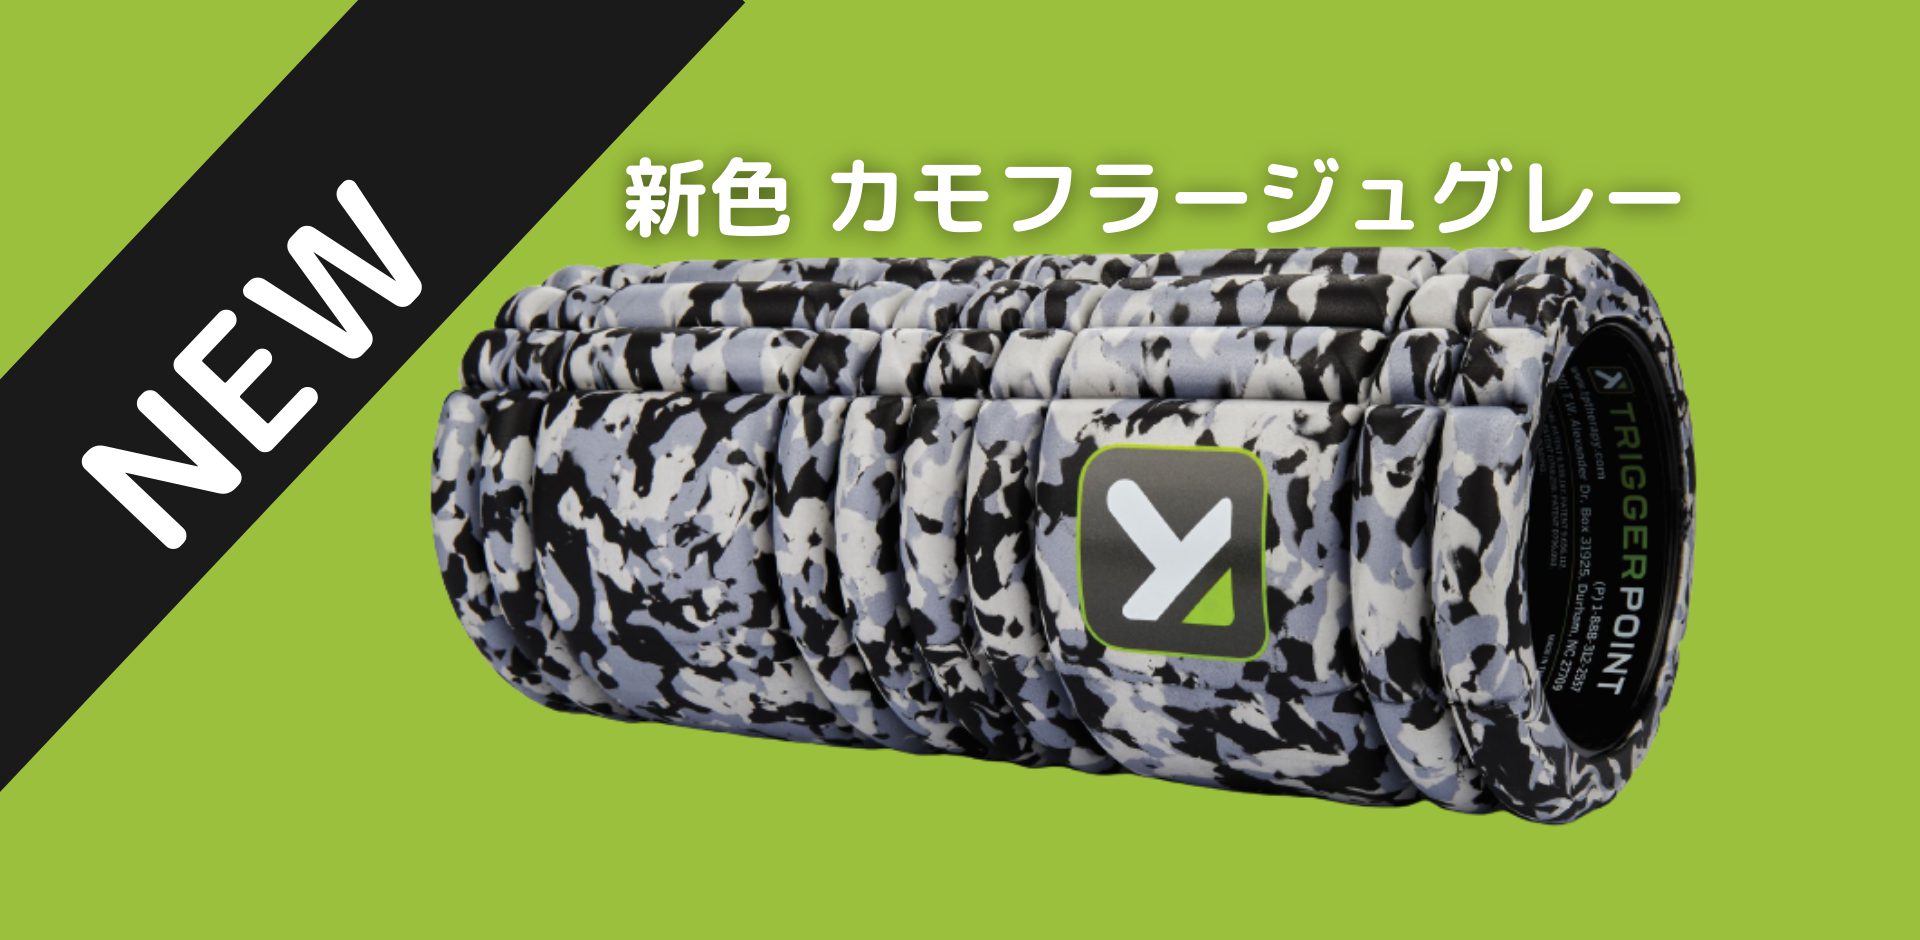 実物 カモフラージュブルー トリガーポイント 日本限定 グリッドフォームローラー エクササイズ